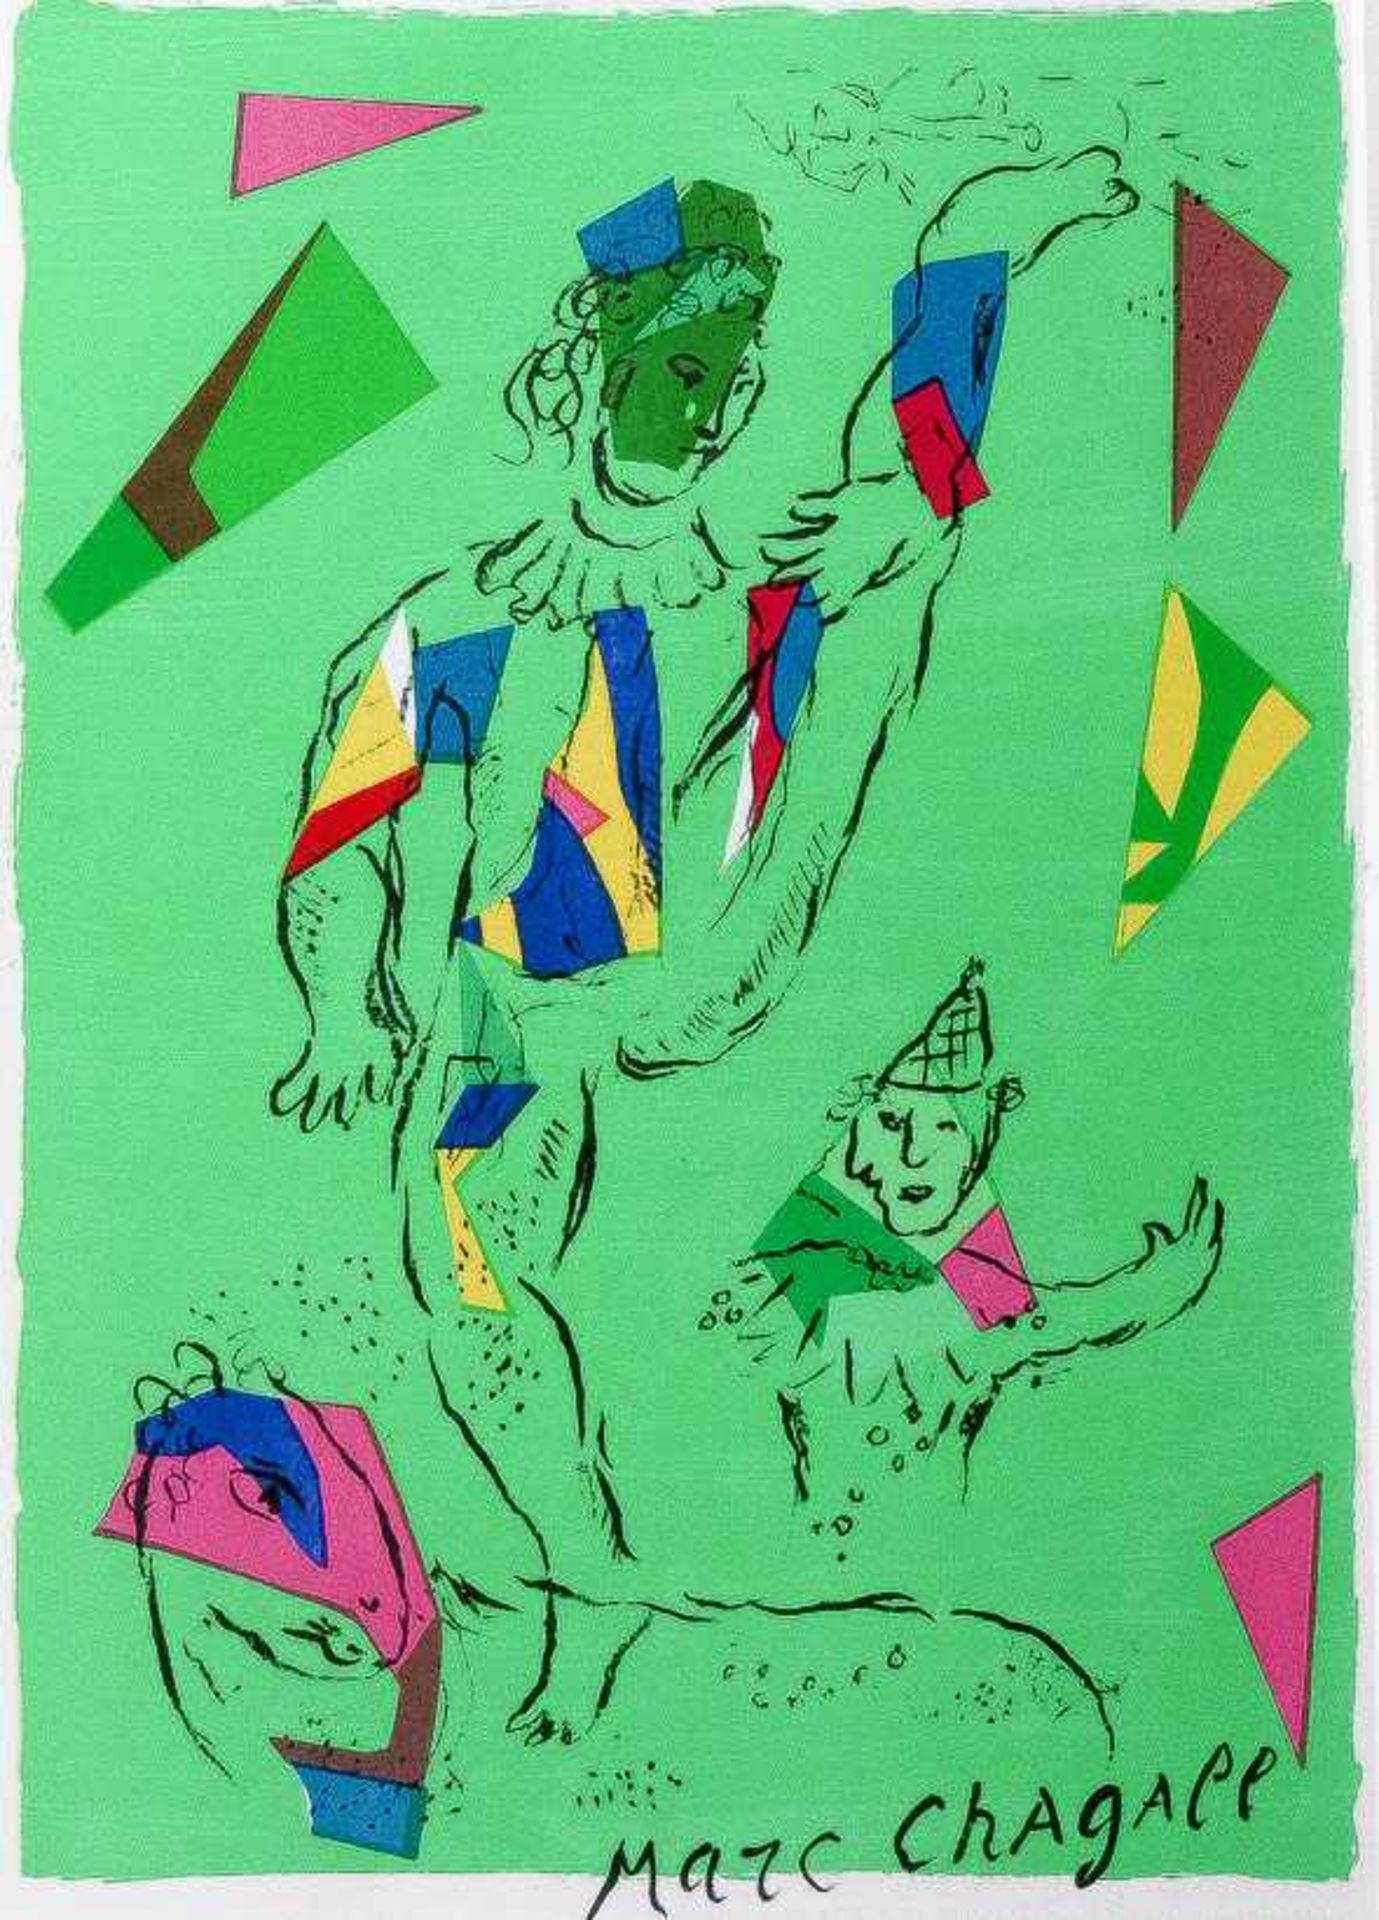 Derselbe "L'acrobate vert". Farblithographie, 1979. Titelseite von "Derrière le Miroir", Nr. 235,